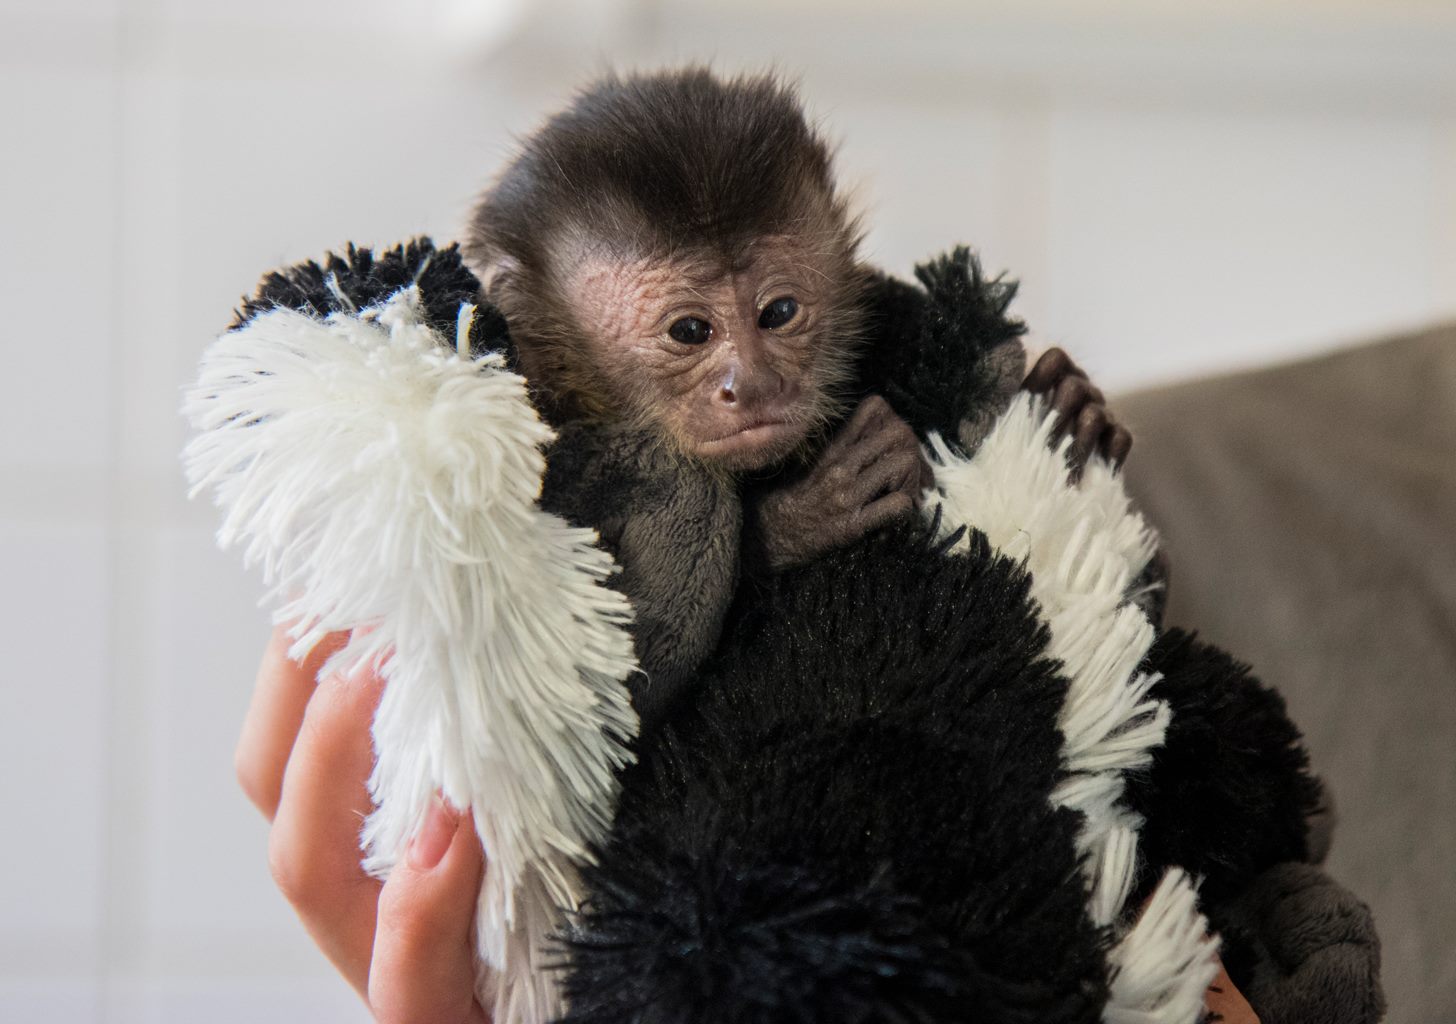 Gondozói etetik a debreceni állatkert legújabb majmát